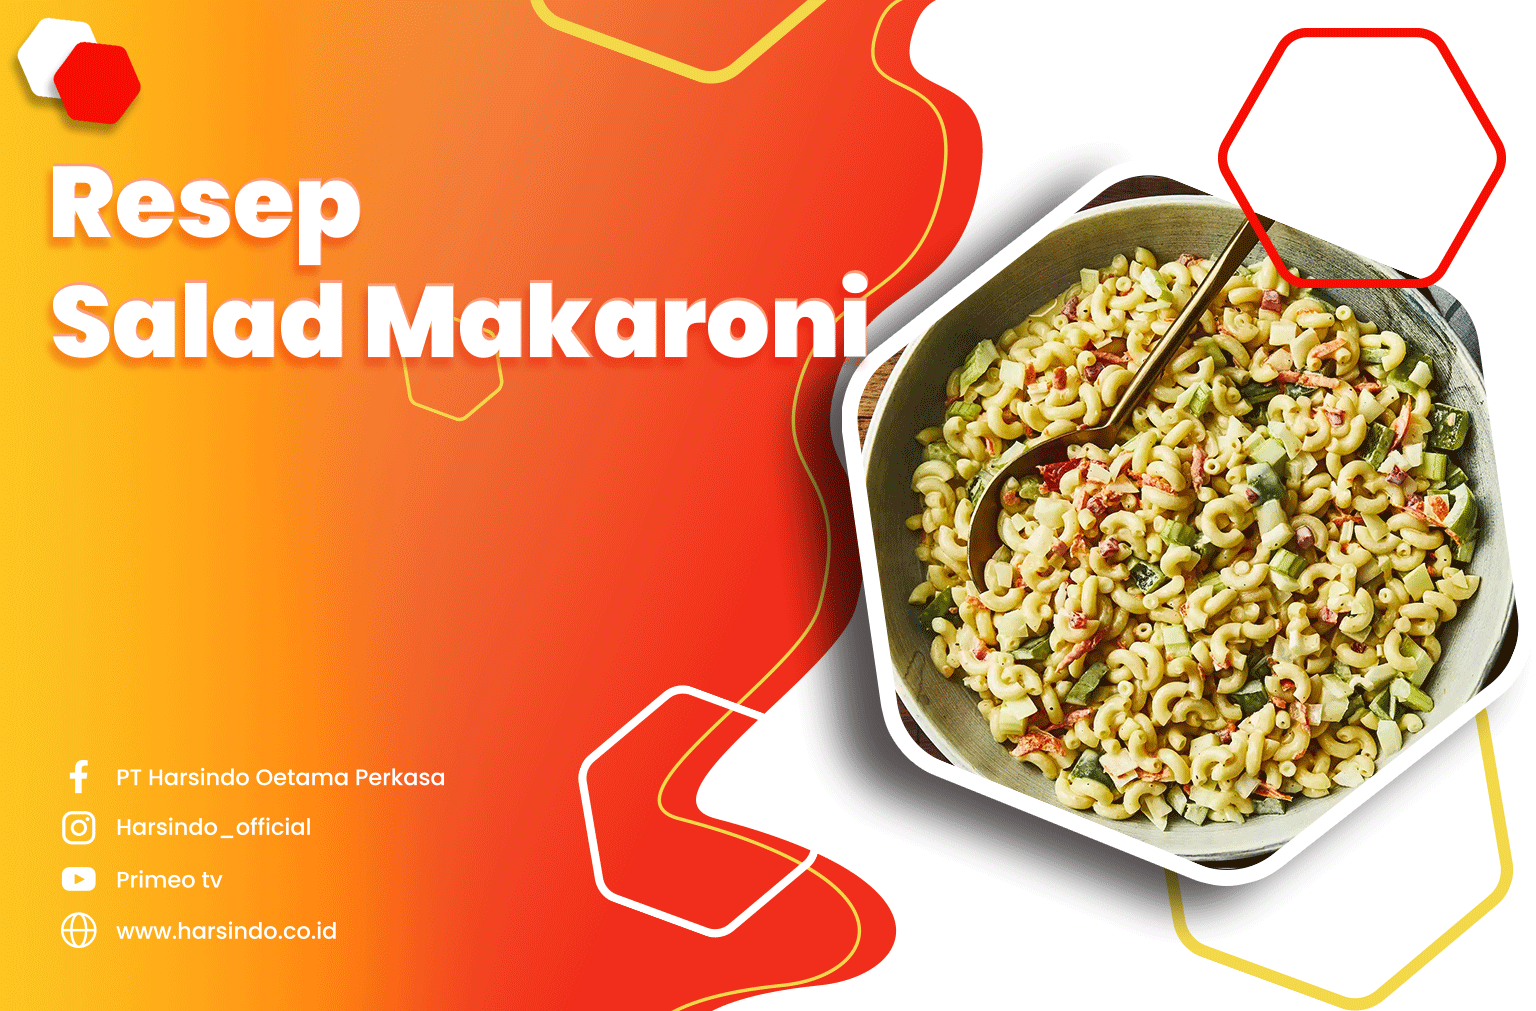 Resep Salad Makaroni